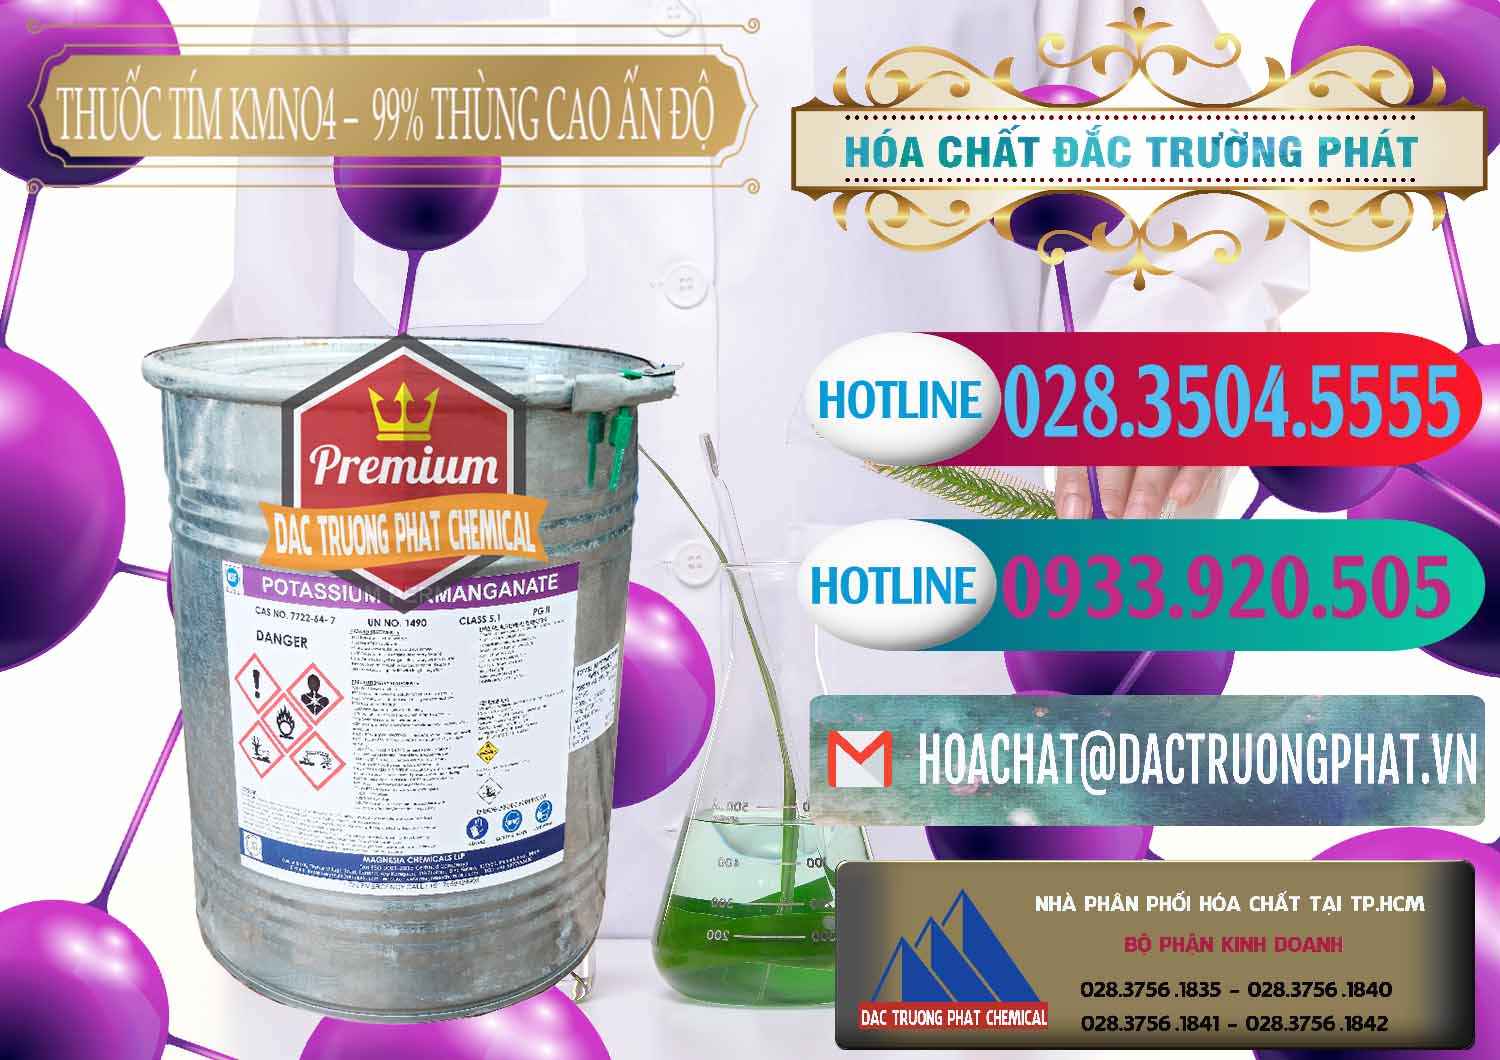 Công ty phân phối - bán Thuốc Tím - KMNO4 Thùng Cao 99% Magnesia Chemicals Ấn Độ India - 0164 - Chuyên phân phối & cung ứng hóa chất tại TP.HCM - truongphat.vn